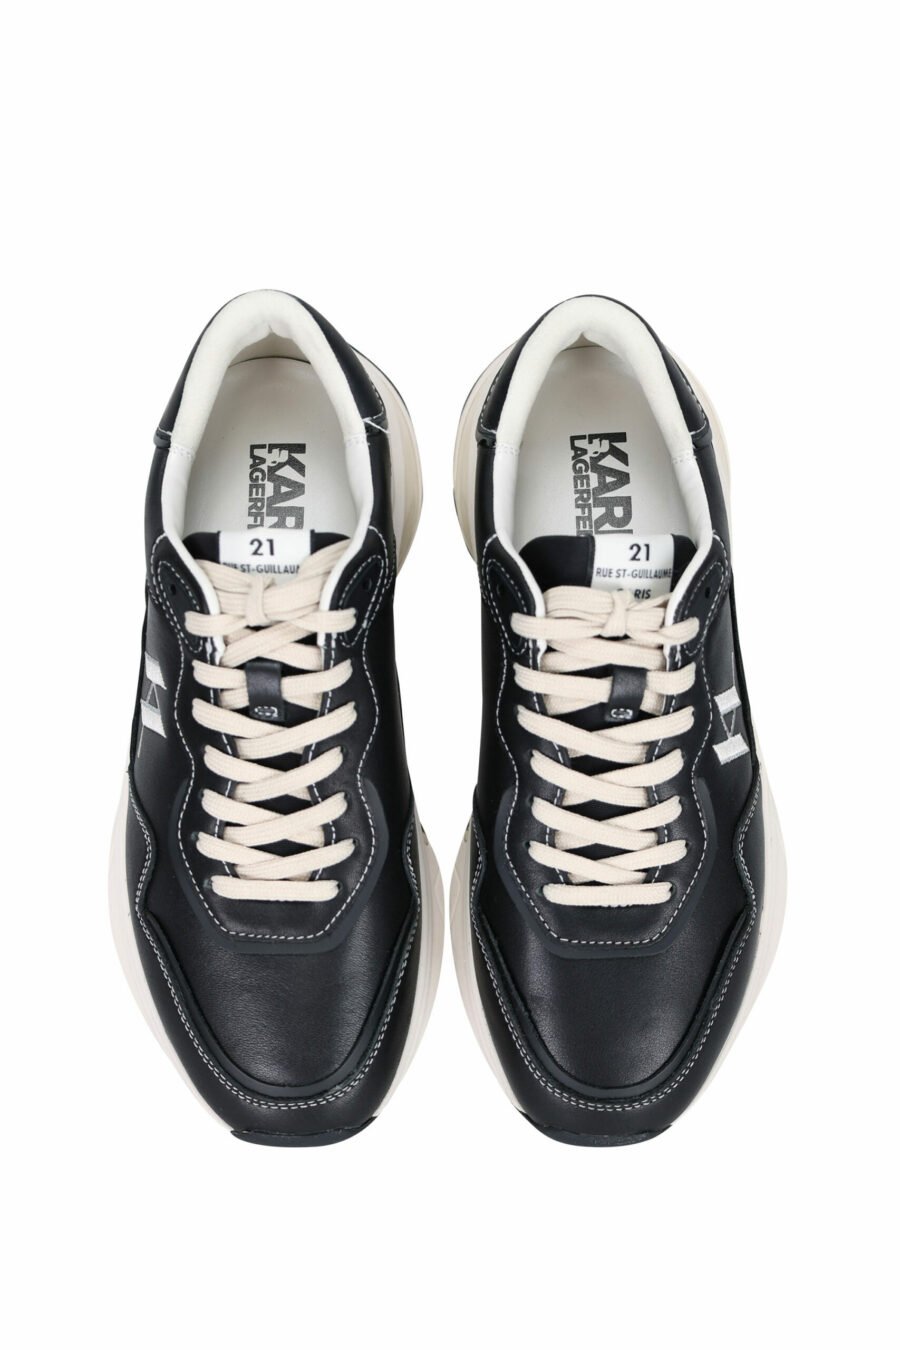 Zapatillas negras "lux finesse" con logo "KL" - 5059529330841 4 scaled